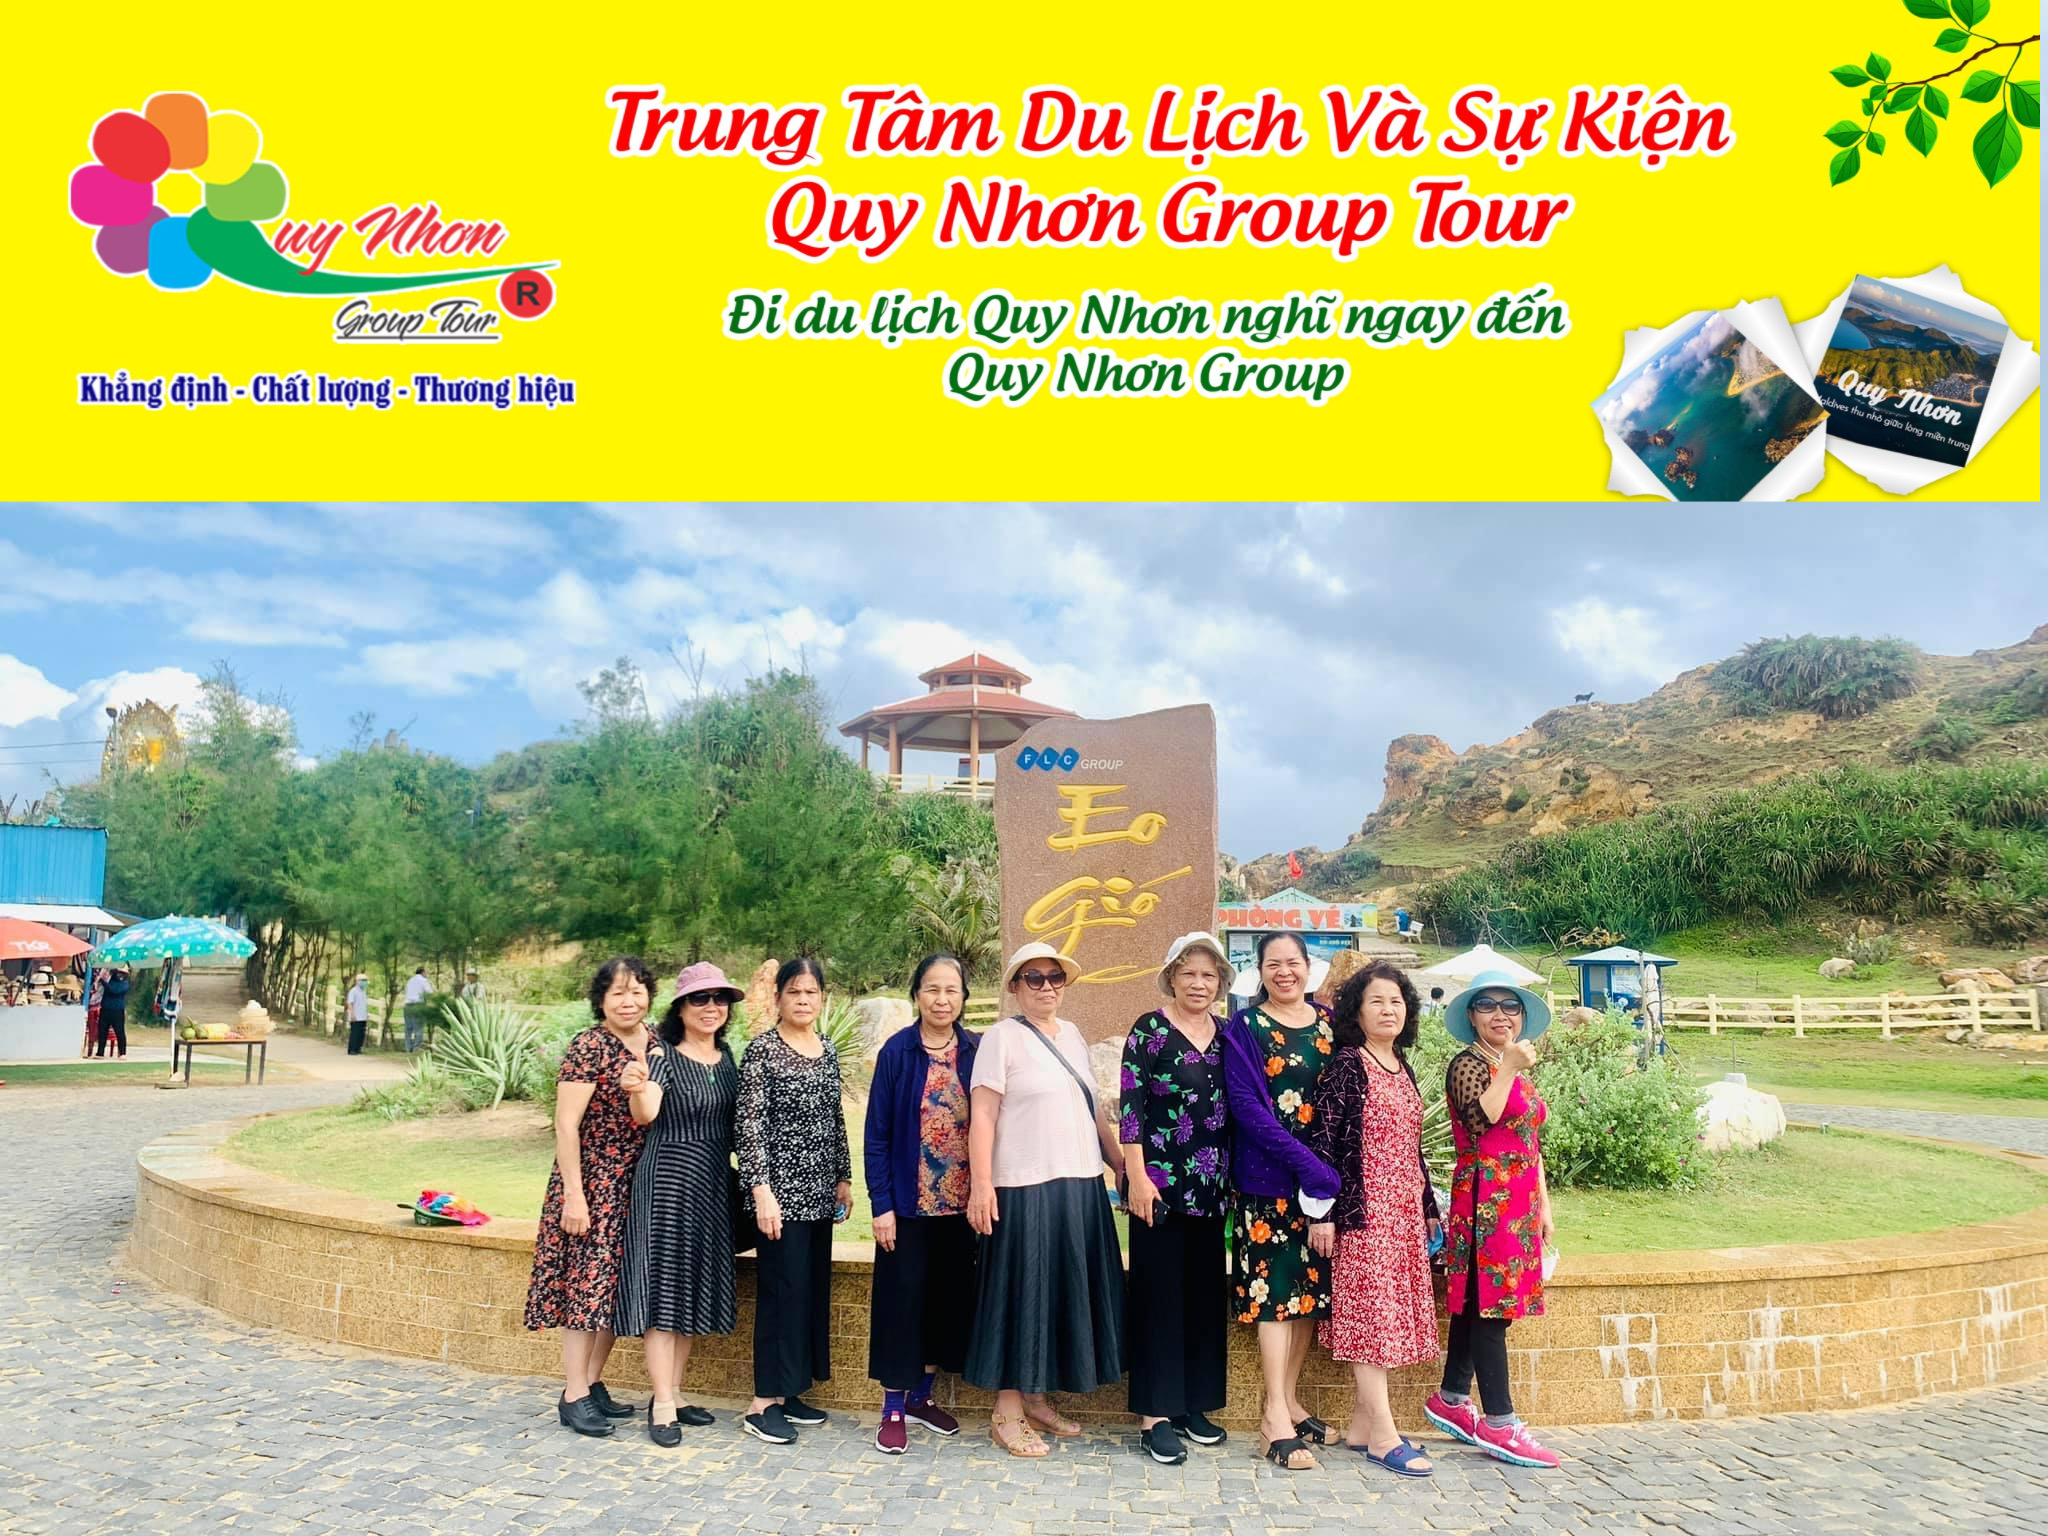 TOUR KỲ CO HÒN KHÔ.Tell (0944.107174)- Tour Sang Trọng – Đẳng Cấp